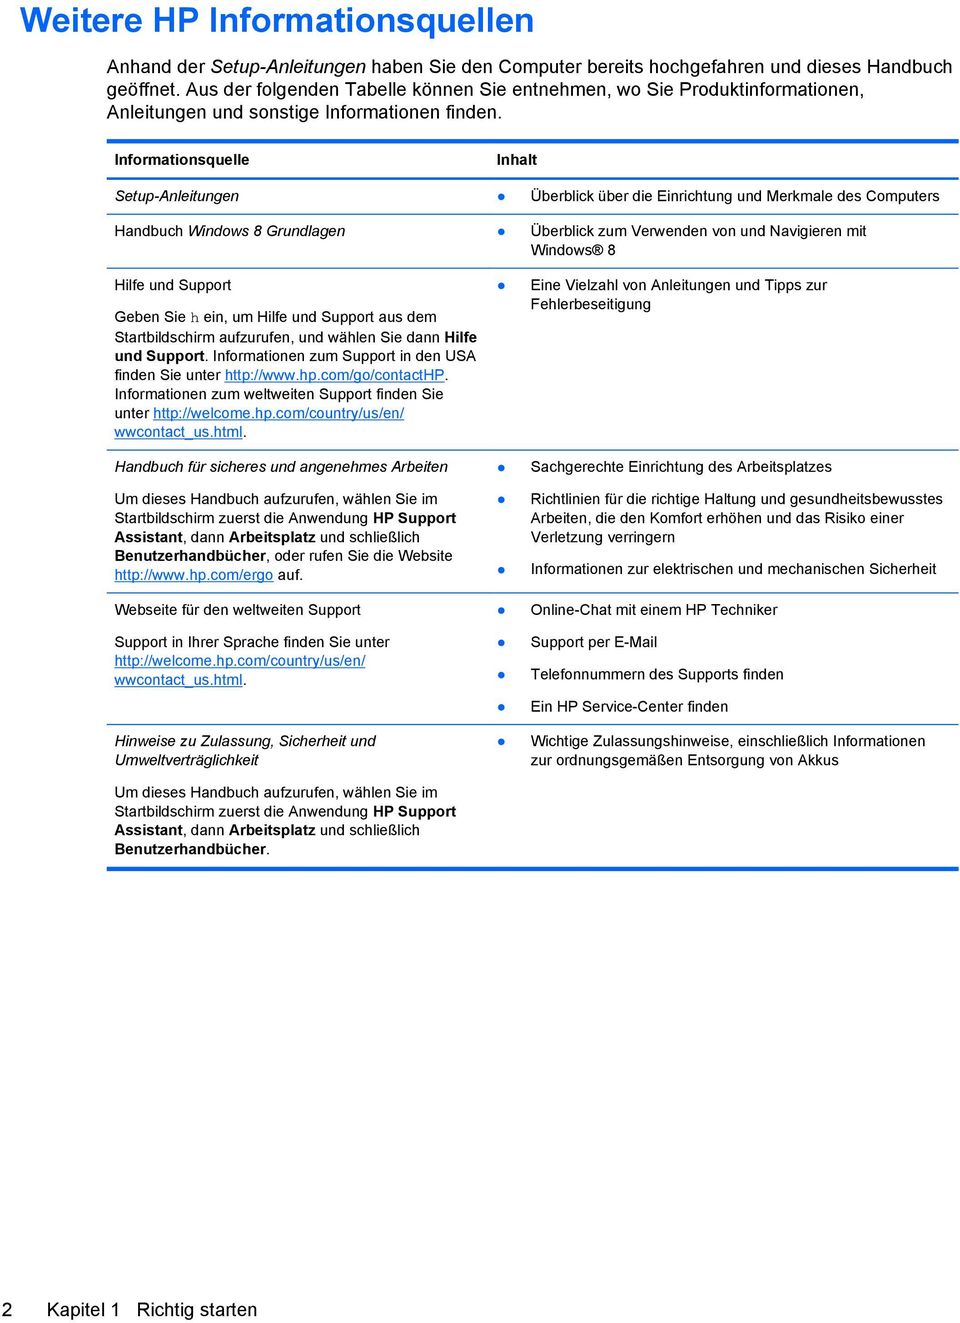 Informationsquelle Inhalt Setup-Anleitungen Überblick über die Einrichtung und Merkmale des Computers Handbuch Windows 8 Grundlagen Überblick zum Verwenden von und Navigieren mit Windows 8 Hilfe und